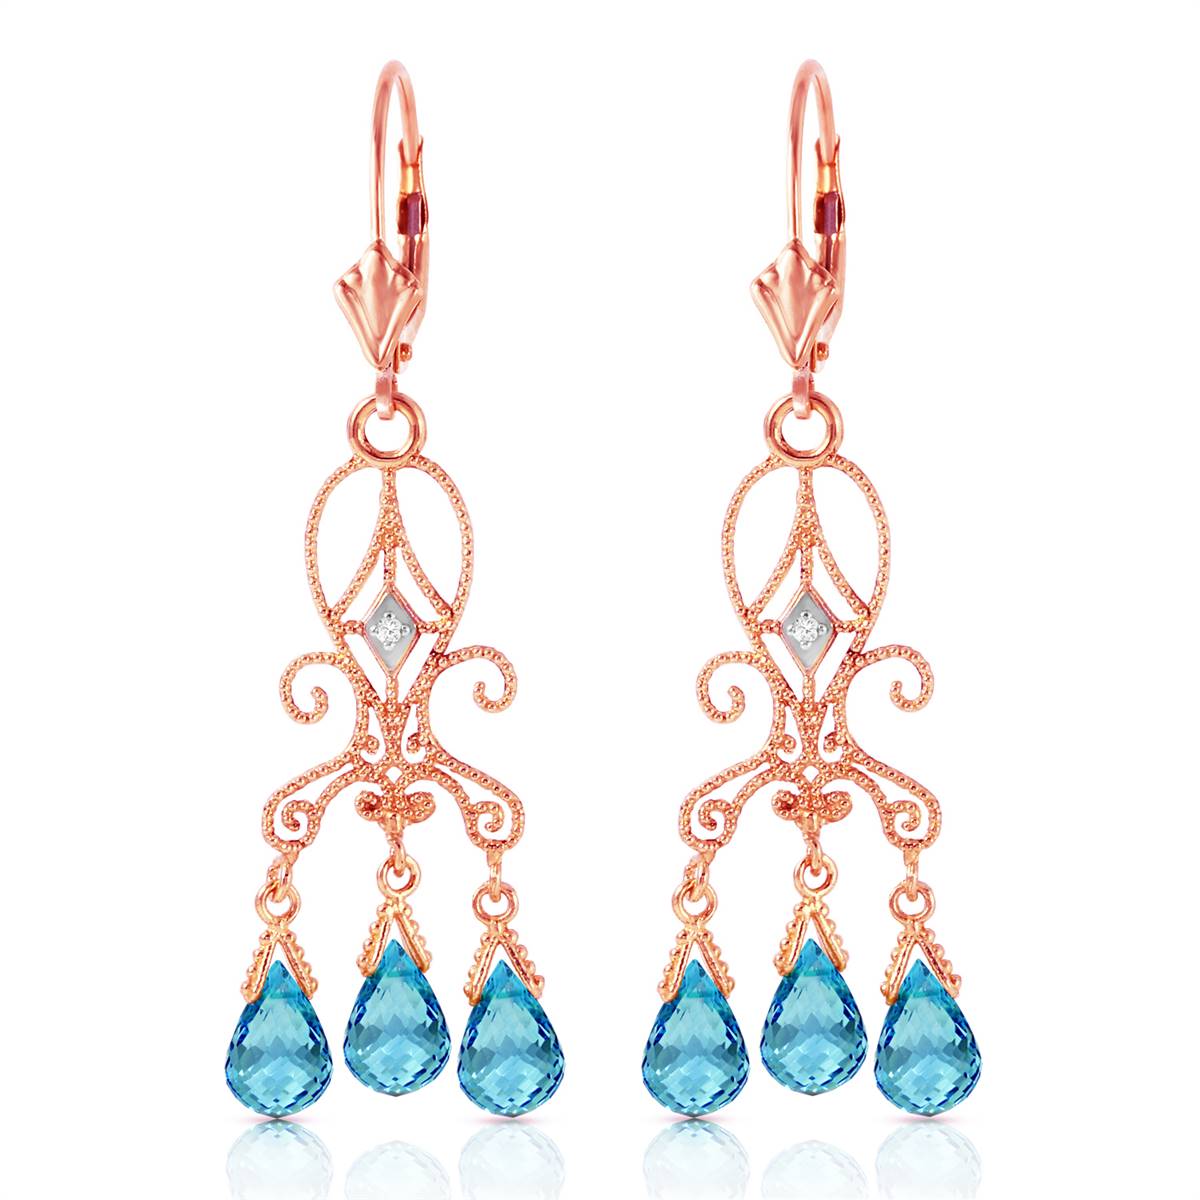 4.81 Carat 14K Solid Rose Gold Chandelier Diamond Earrings Blue Topaz